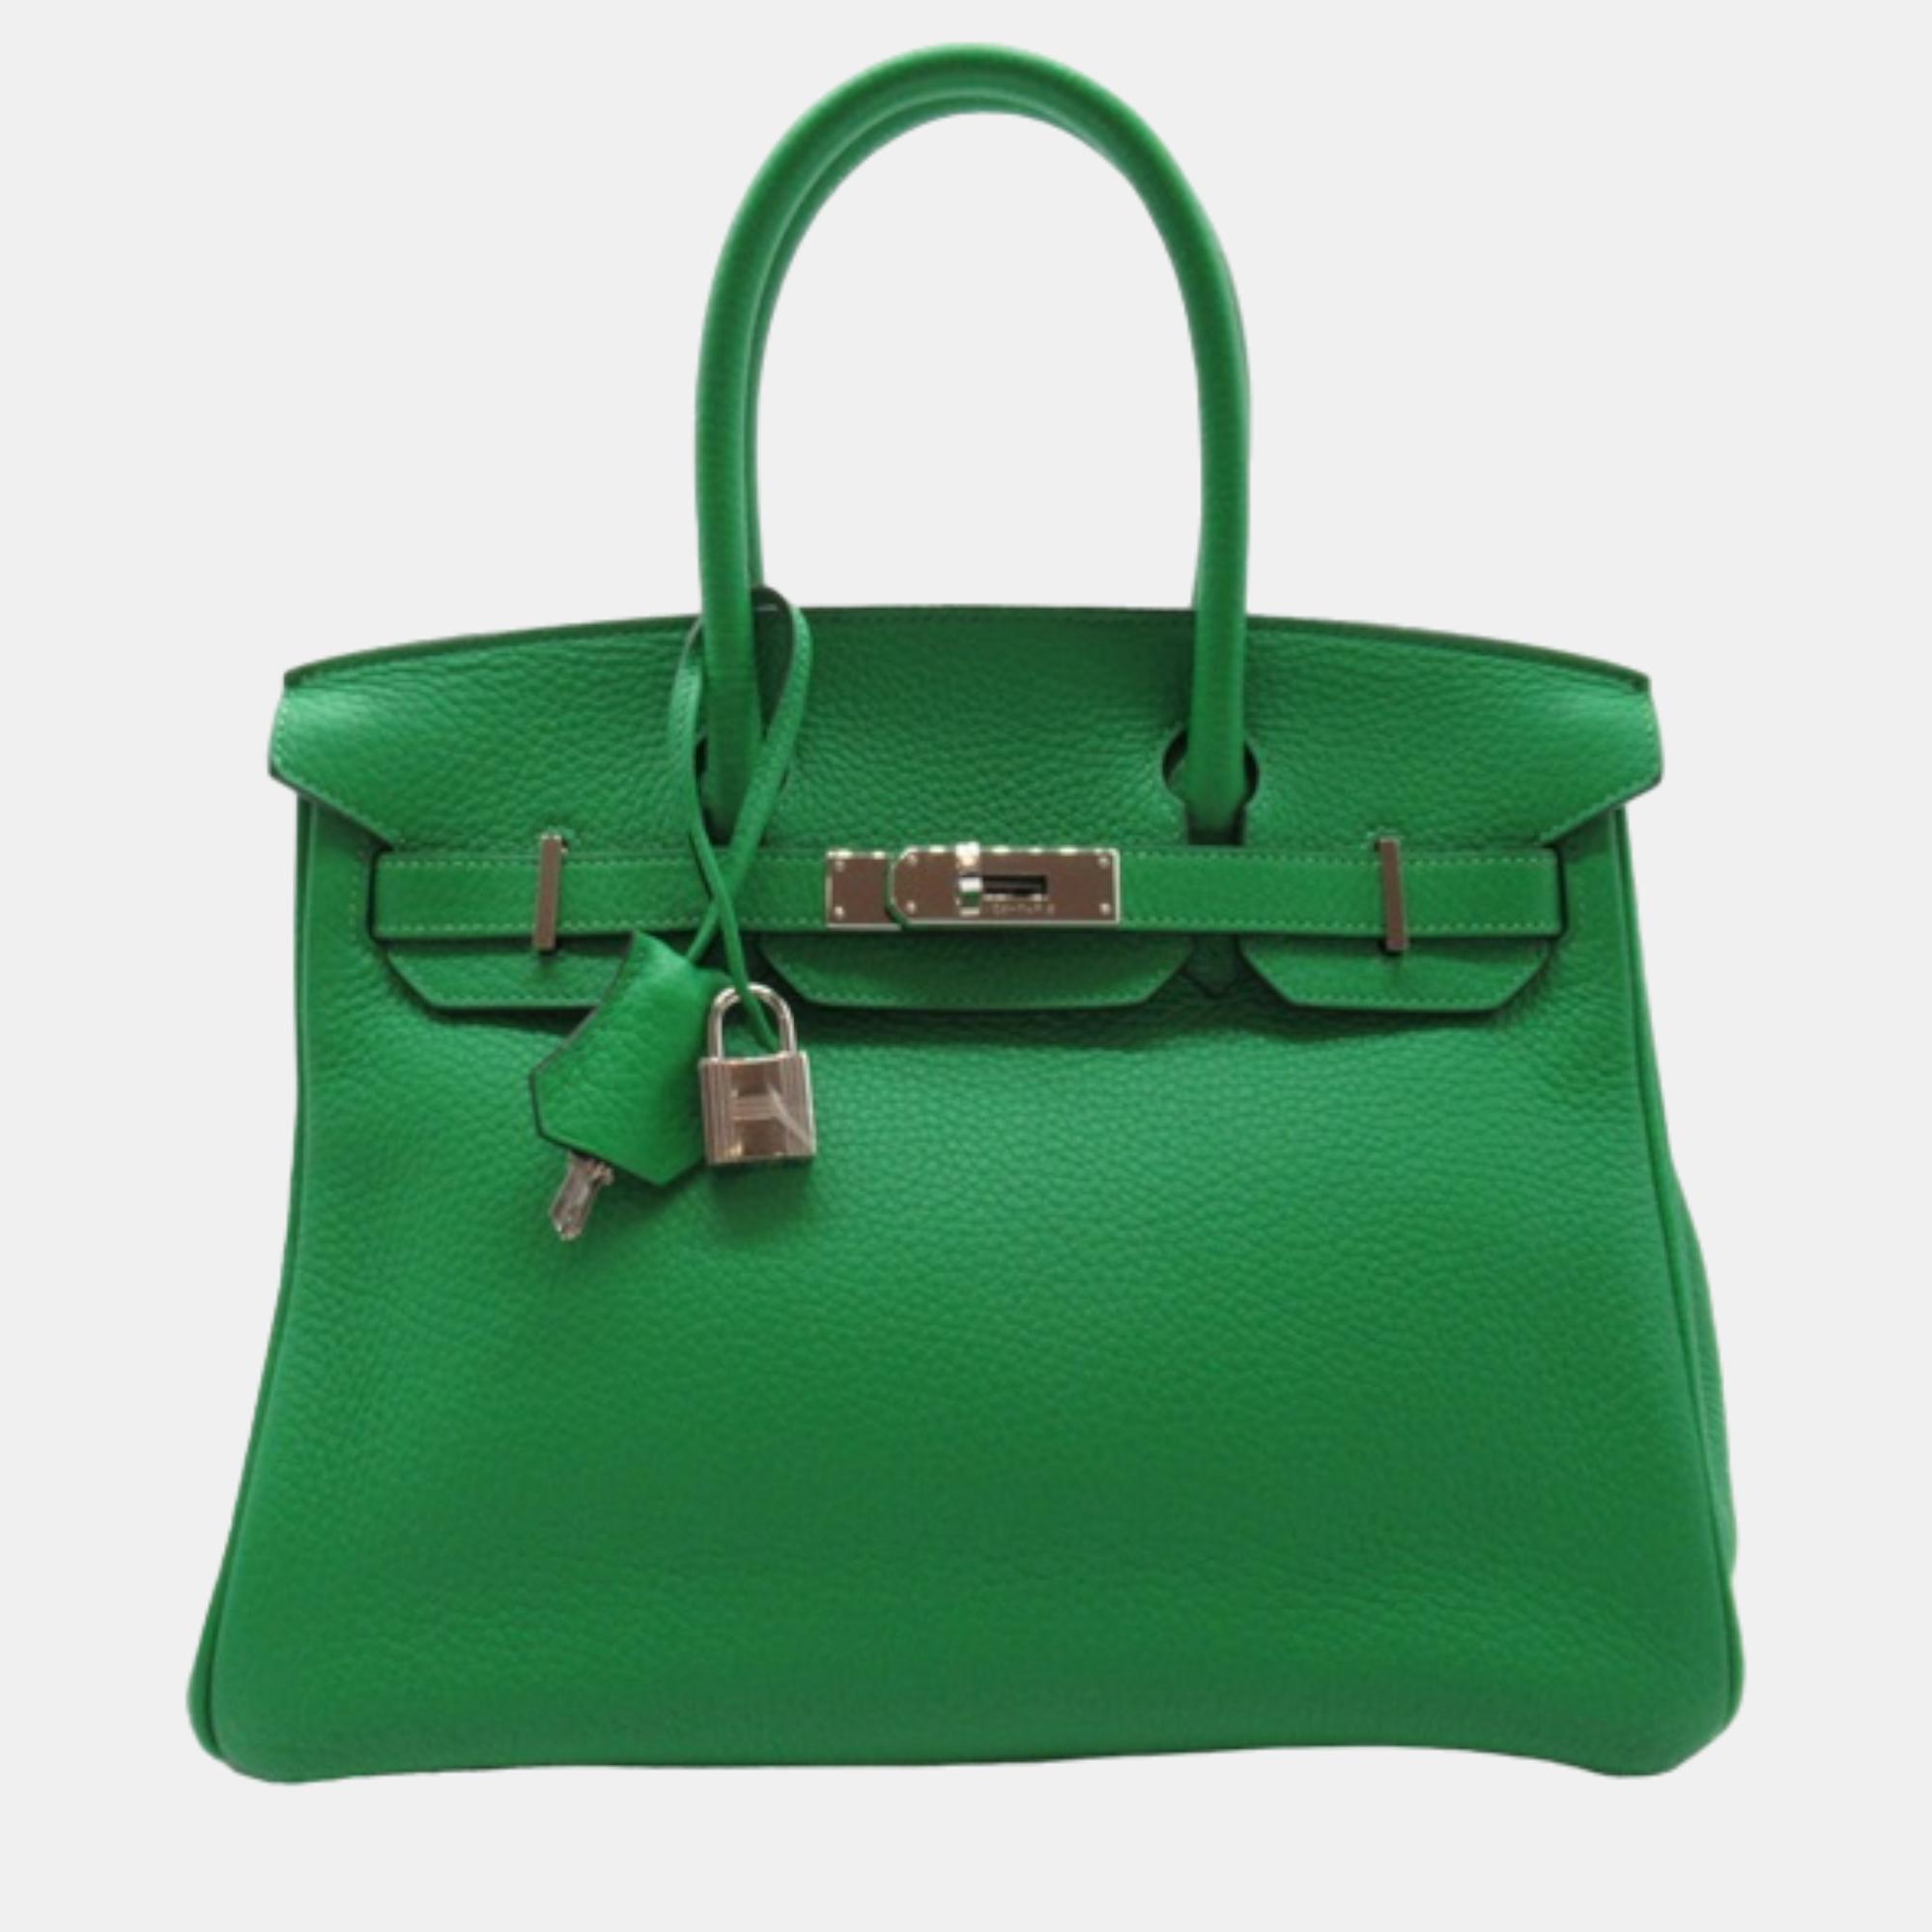 Pre-owned Hermes Green Leather Togo Birkin 30 Handbag